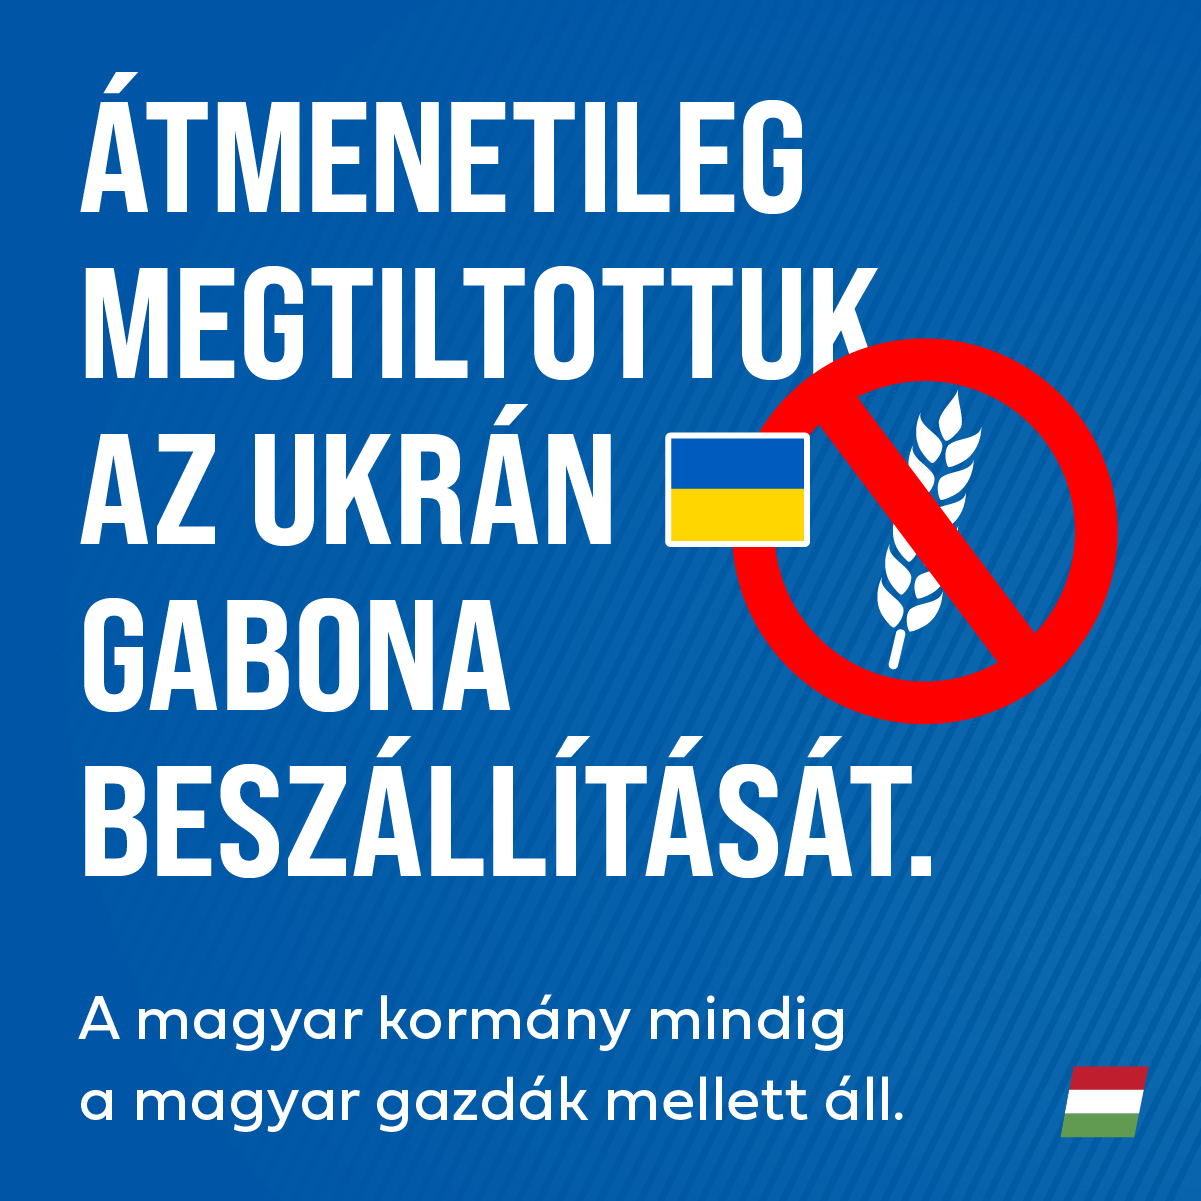 Szlovákiához és Lengyelországhoz hasonlóan, Magyarország is betiltja az ukrán gabona forgalmazását. Nem veszélyeztethetjük a magyar mezőgazdaságot és a magyar gazdák megélhetését.